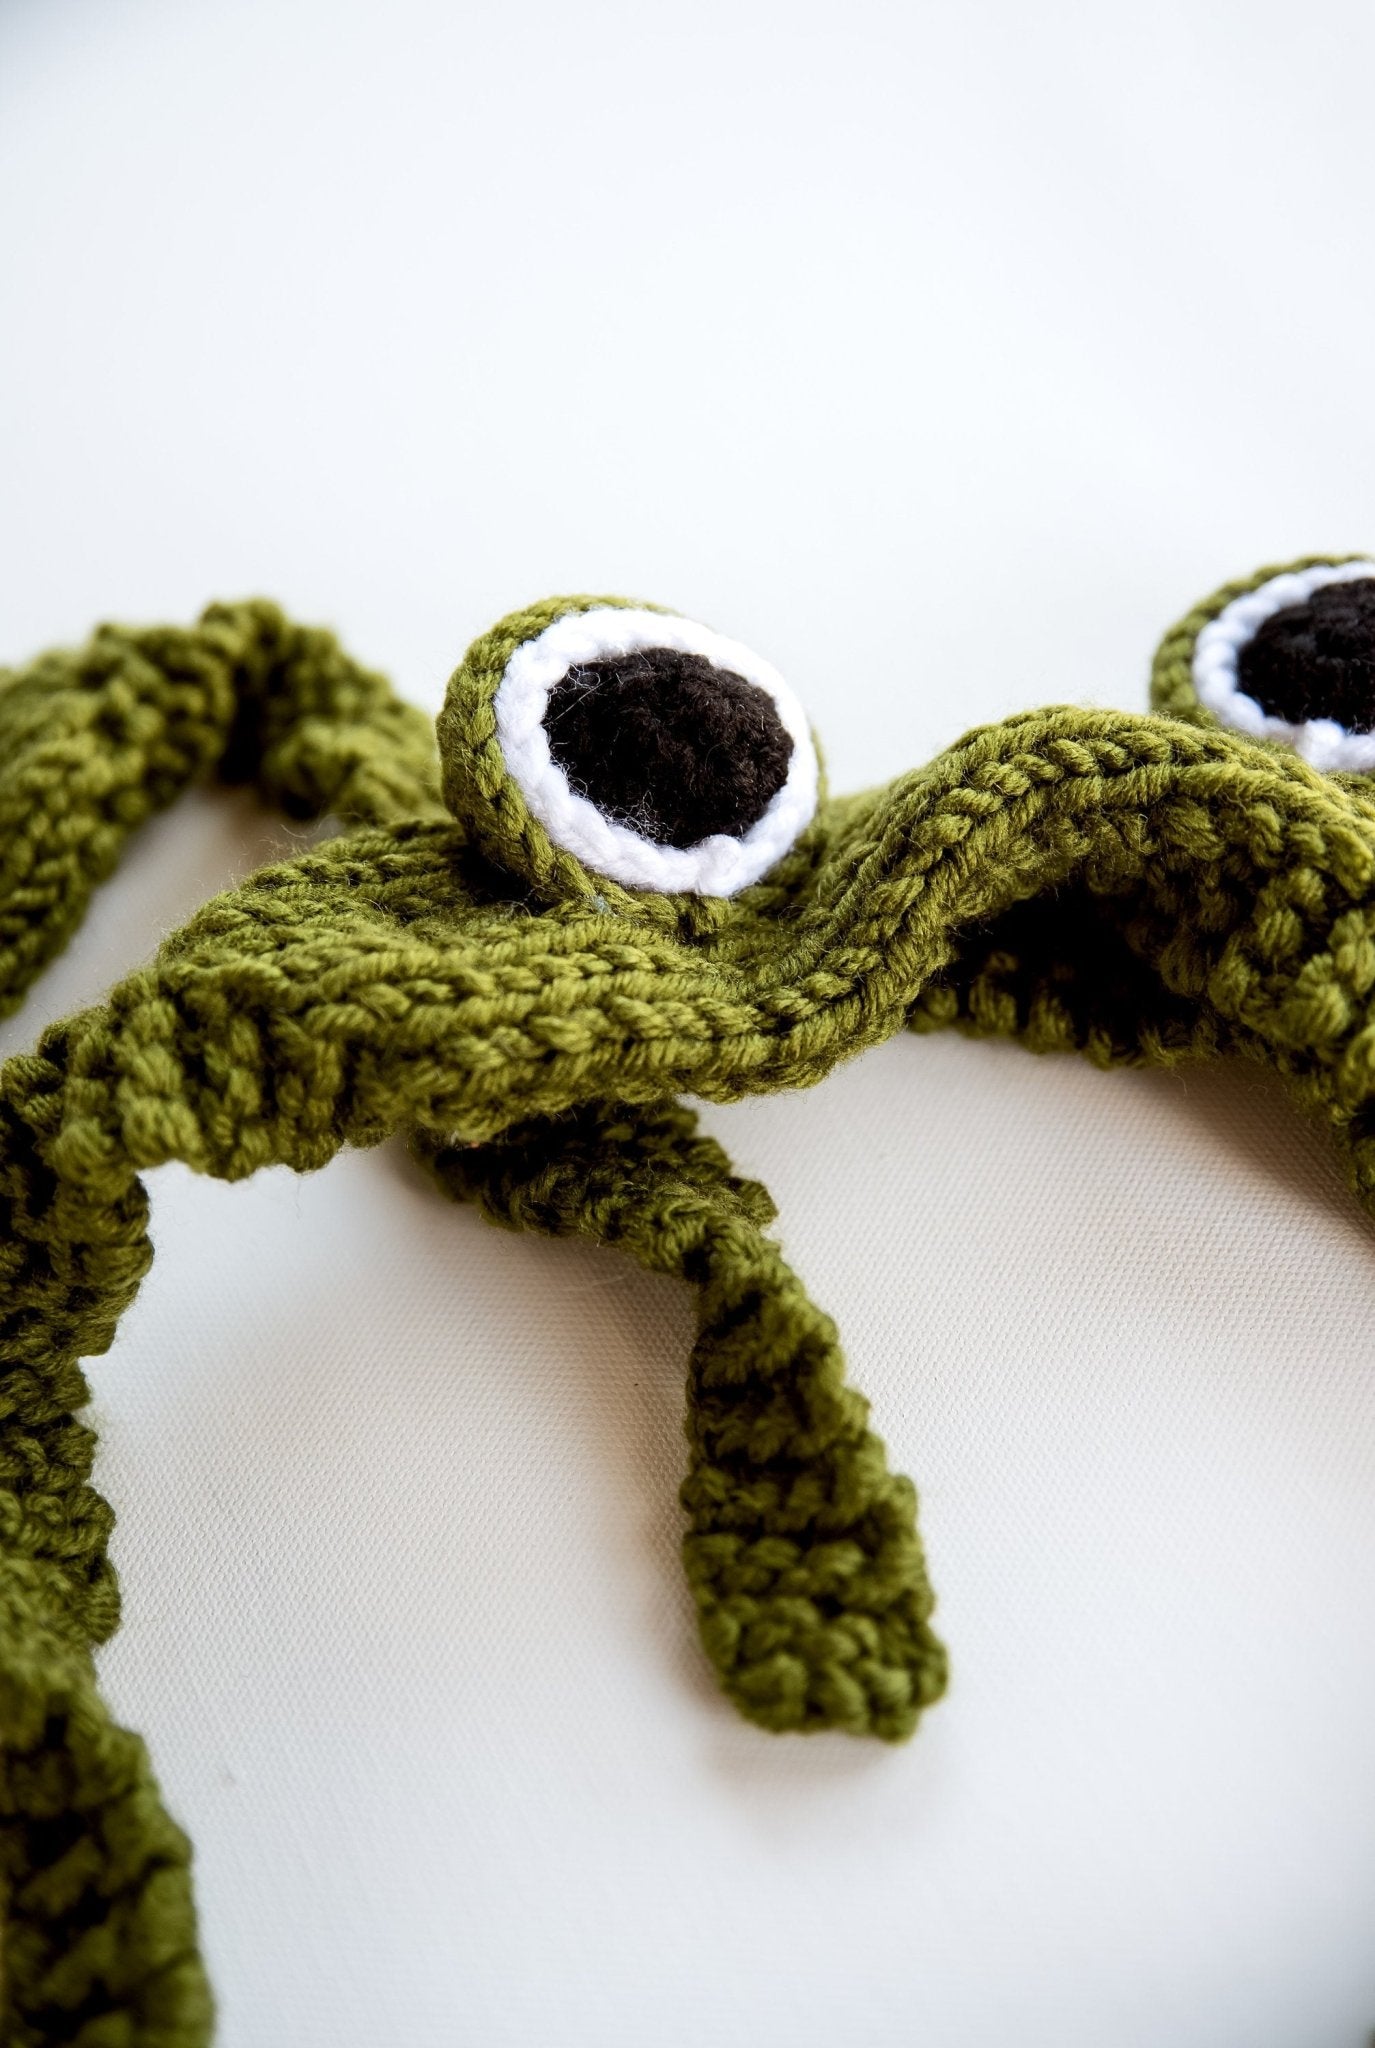 Frog Headband 3D Frog Eye Headband Green Frog Headband Kawai Animal Hairband Cute Crochet Frog Headwear Amigurumi Frog Costume Kawai Gift - Hemsin Atelier